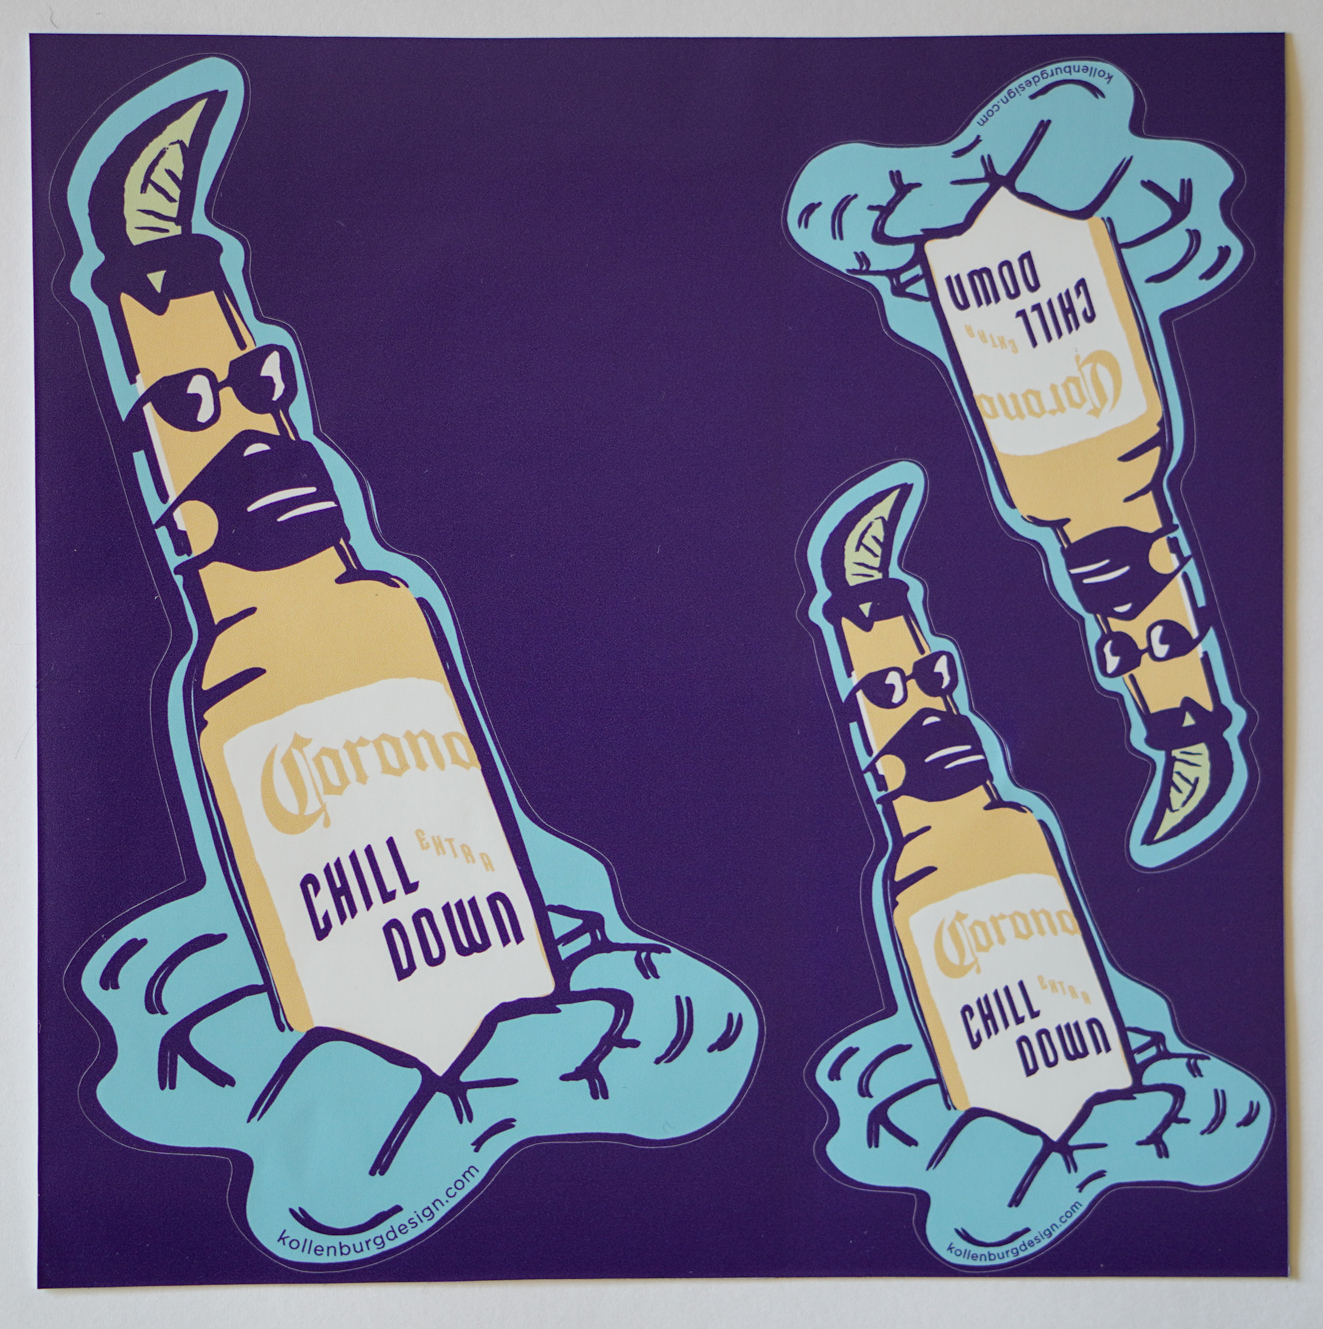 Corona-chill-down-stickers